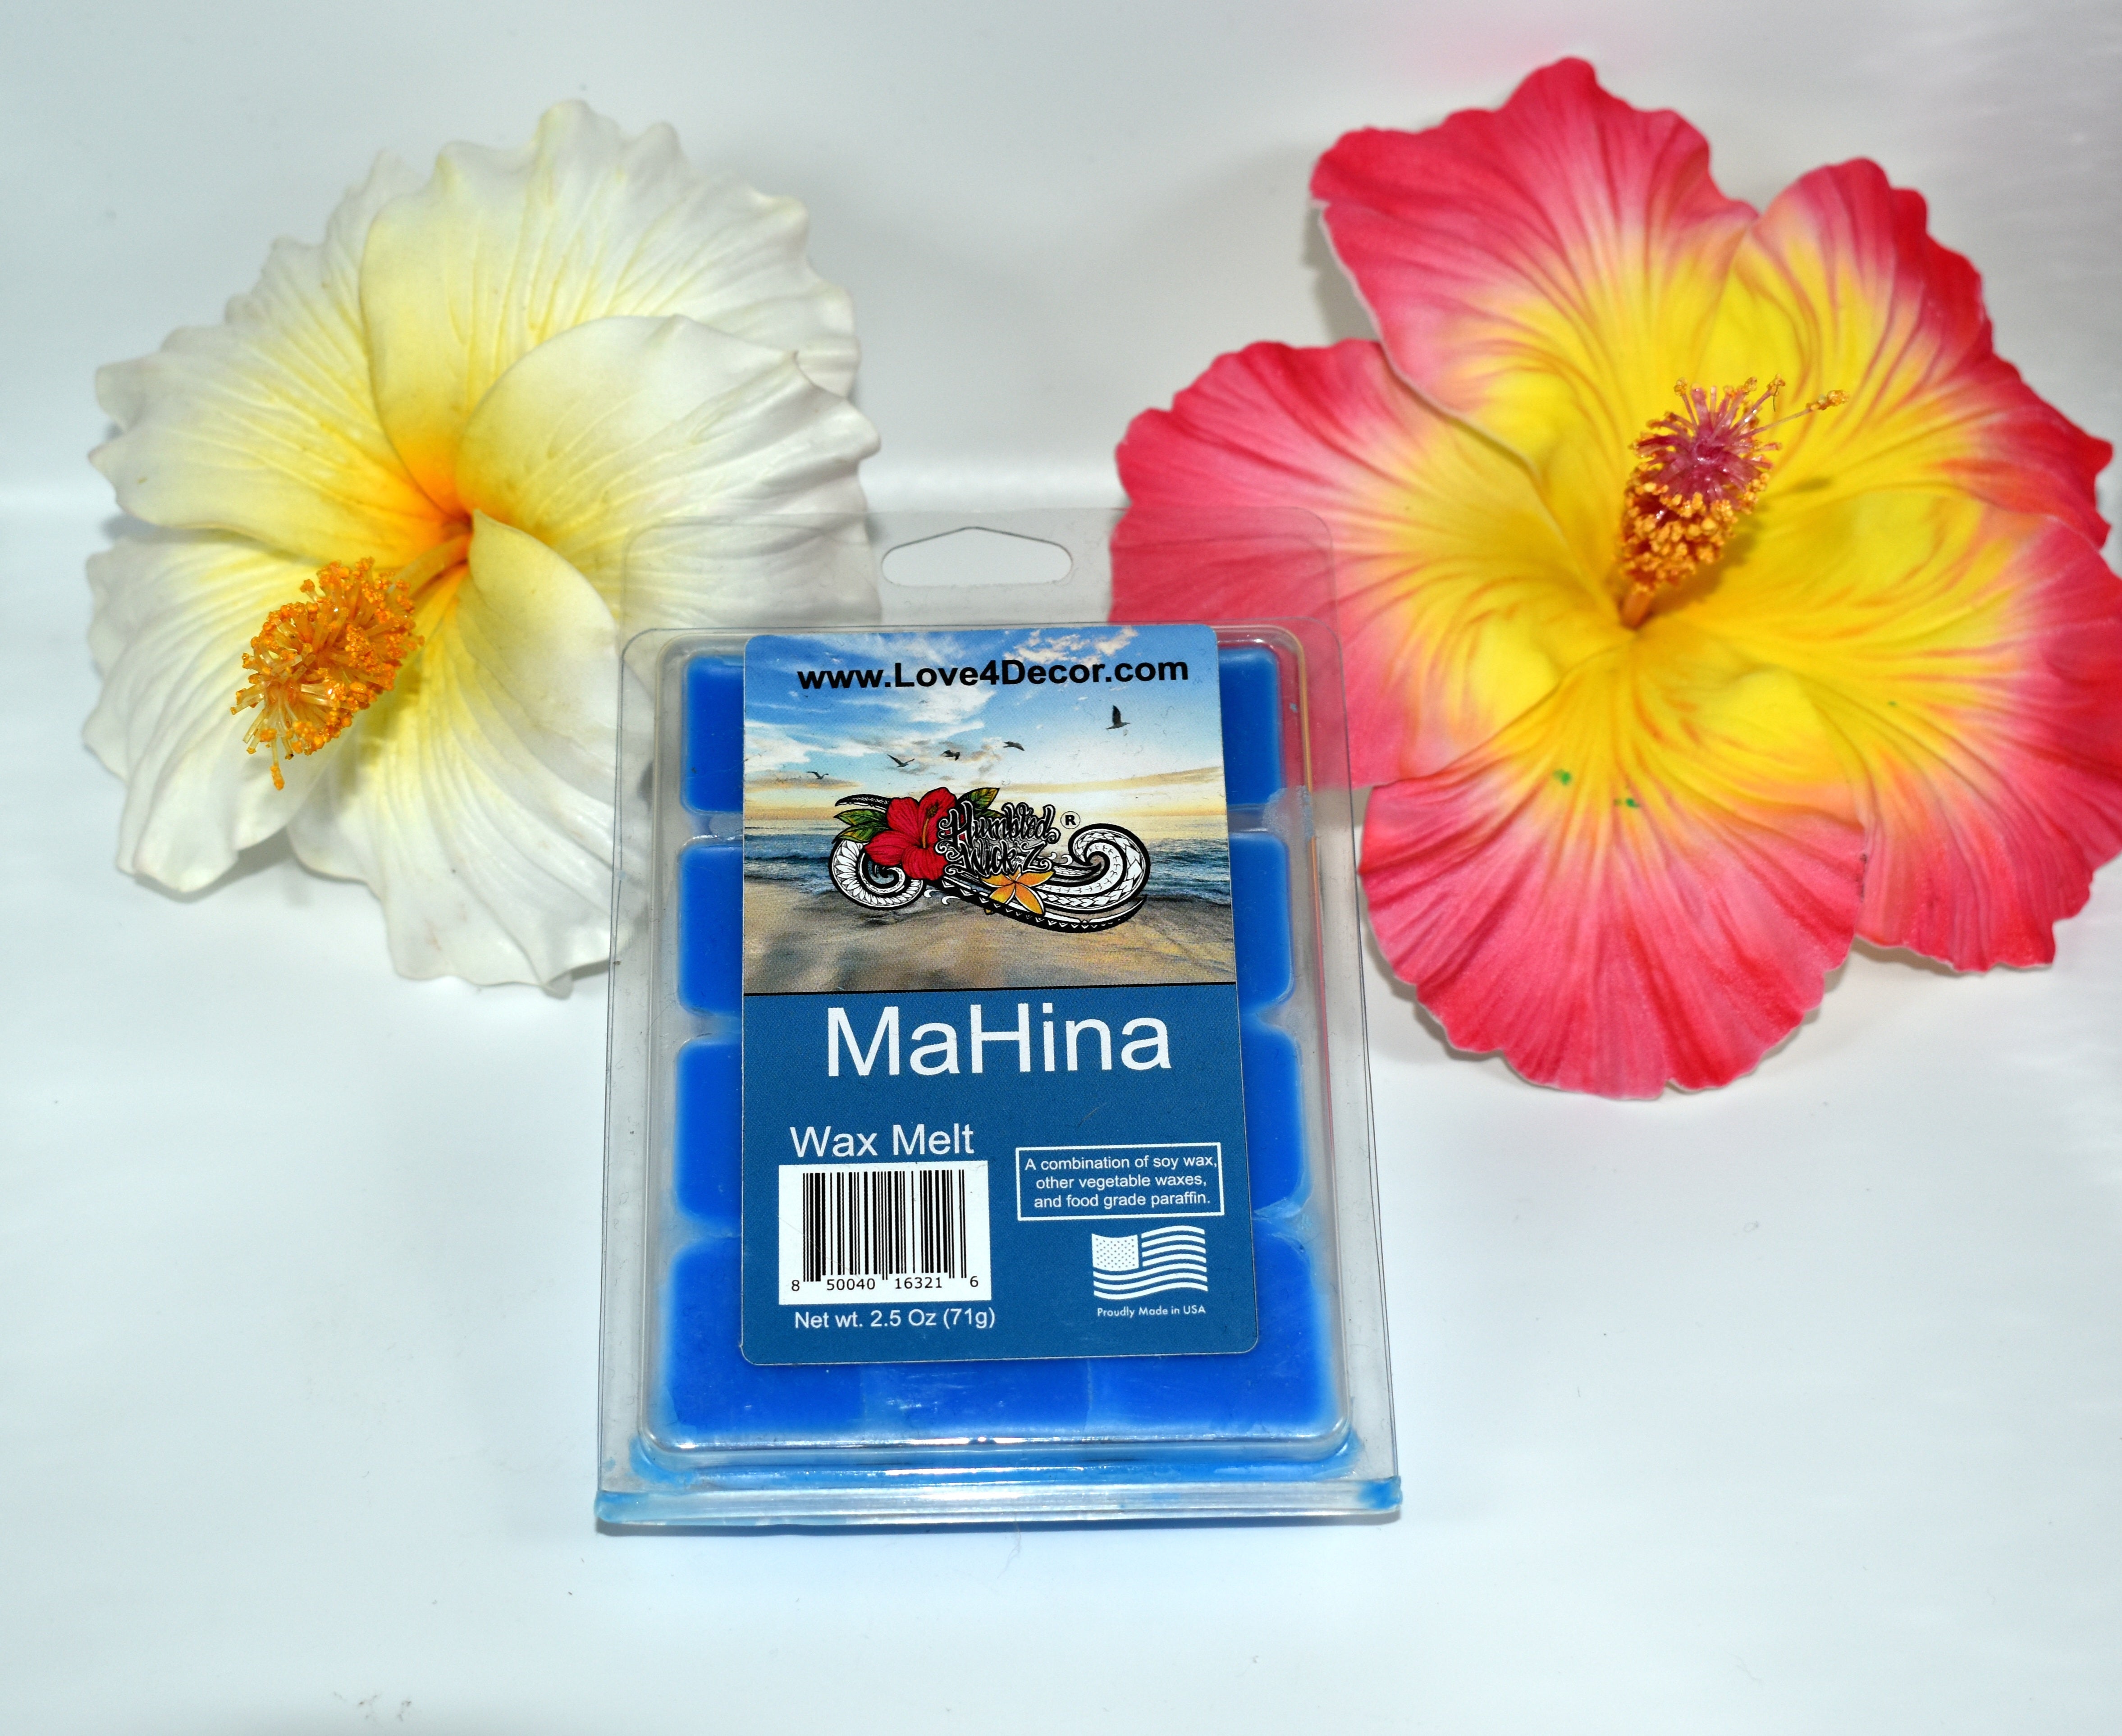 The MaHina Scent